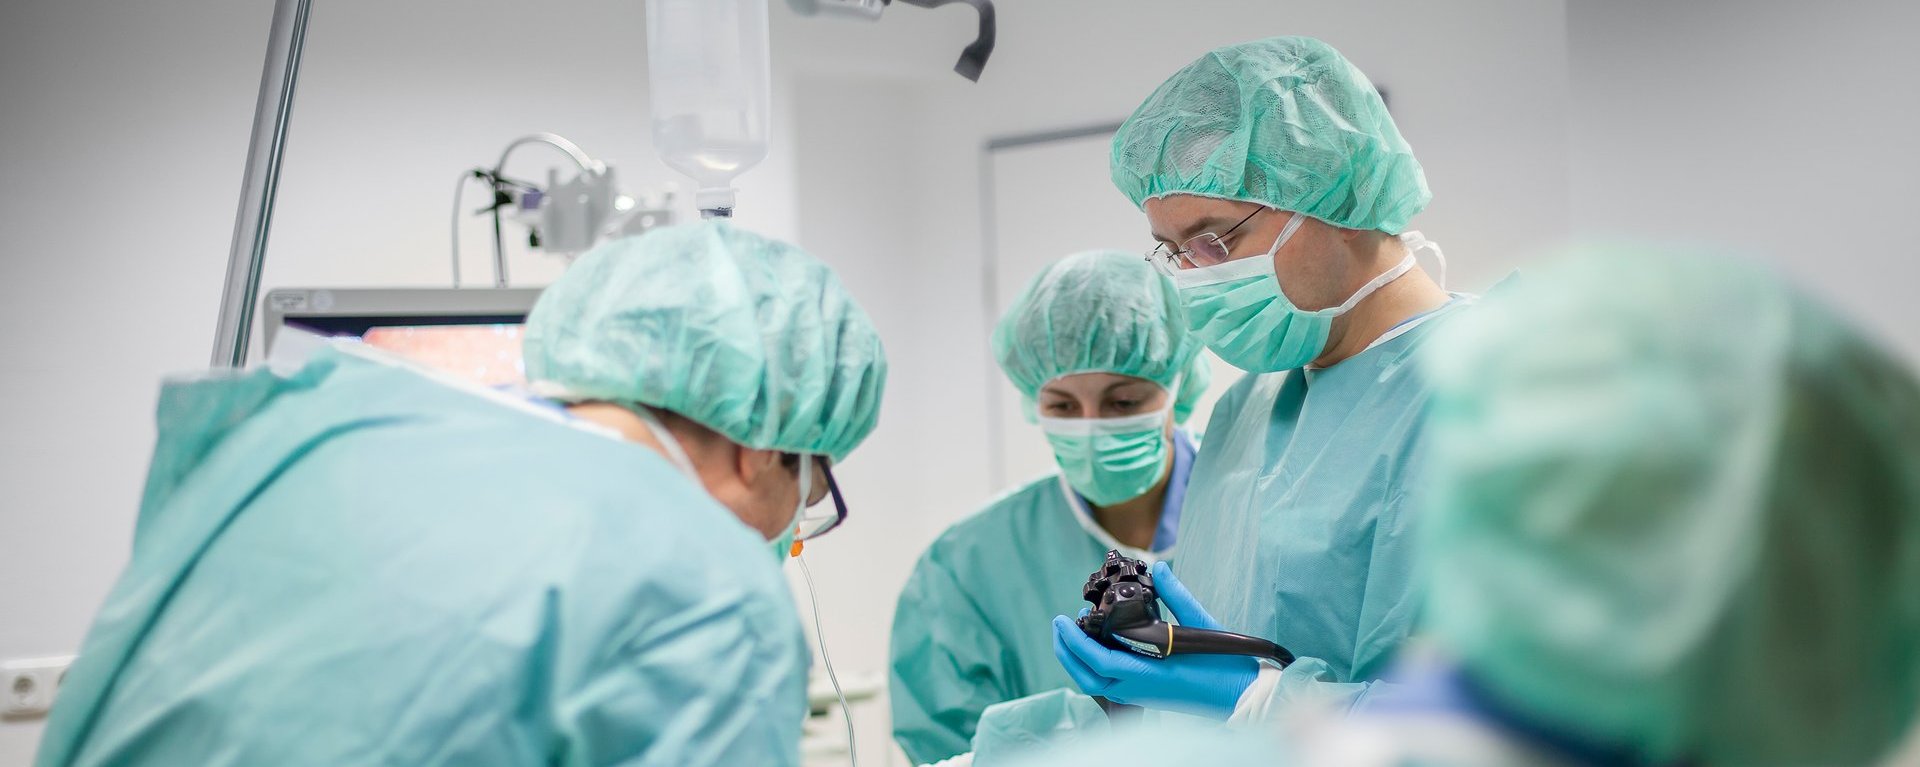 Endoskopie im Bereich der Gefäßchirurgie der Wertachkliniken